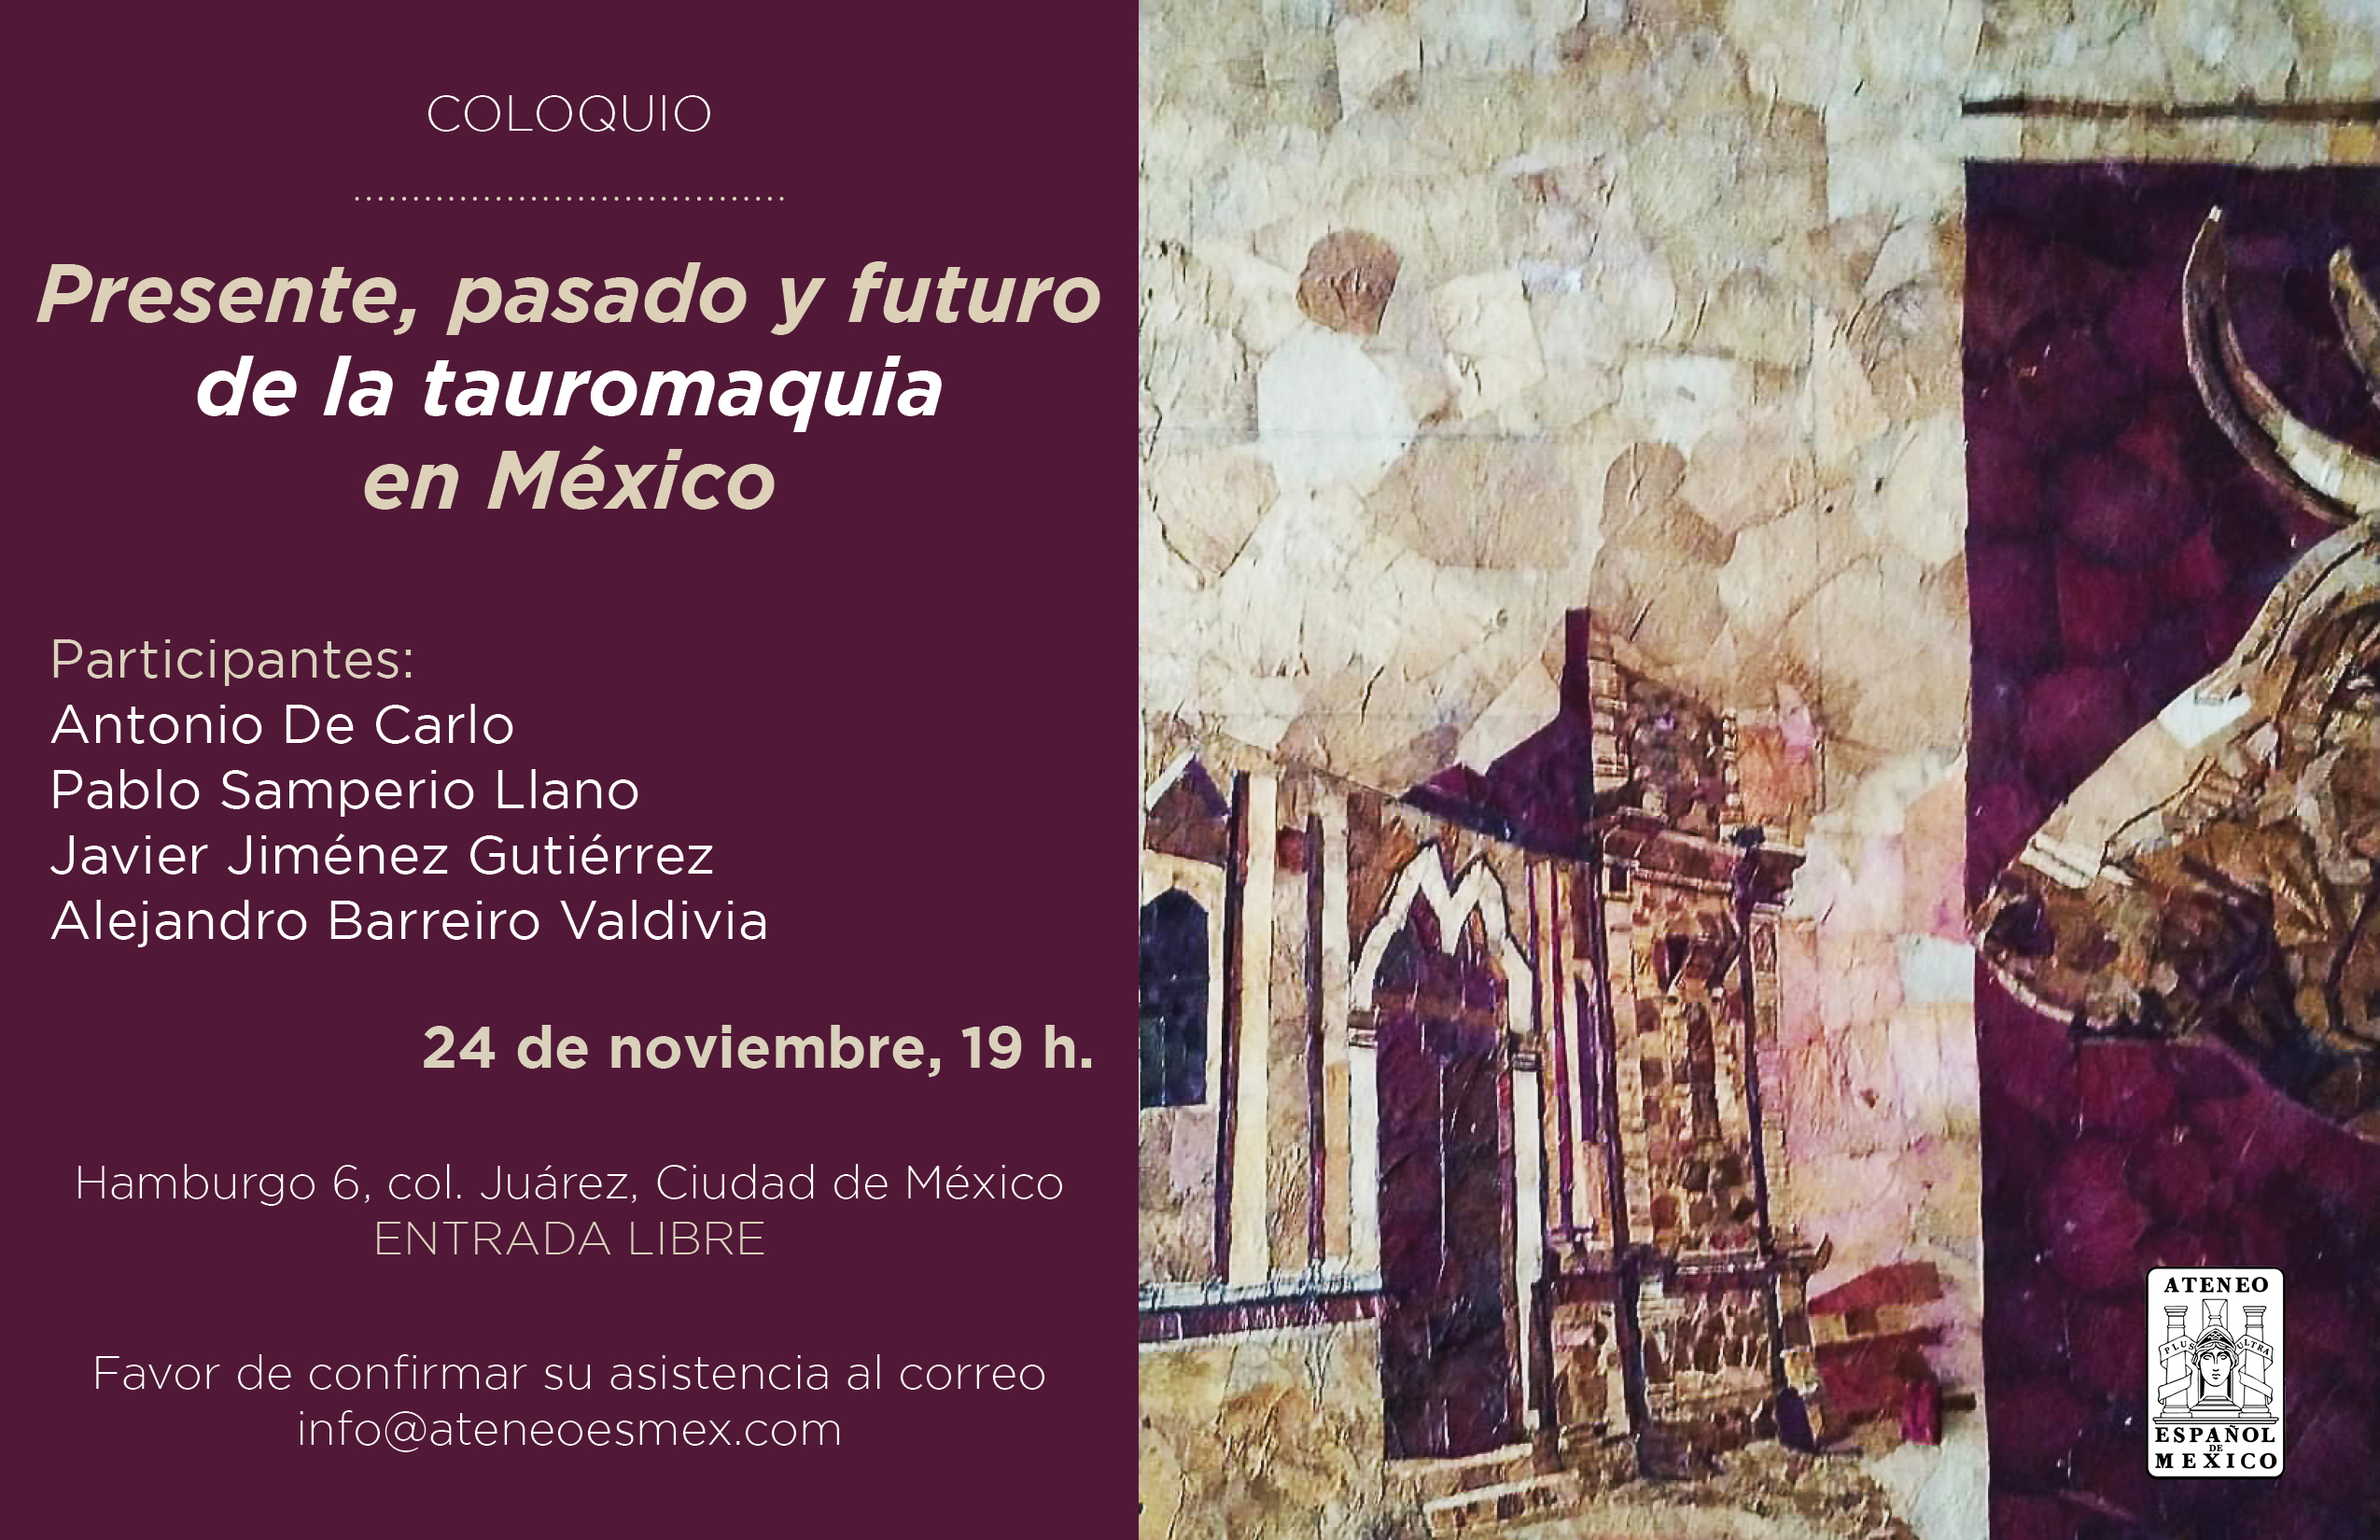 Coloquio. Presente, pasado y futuro de la tauromaquia en México